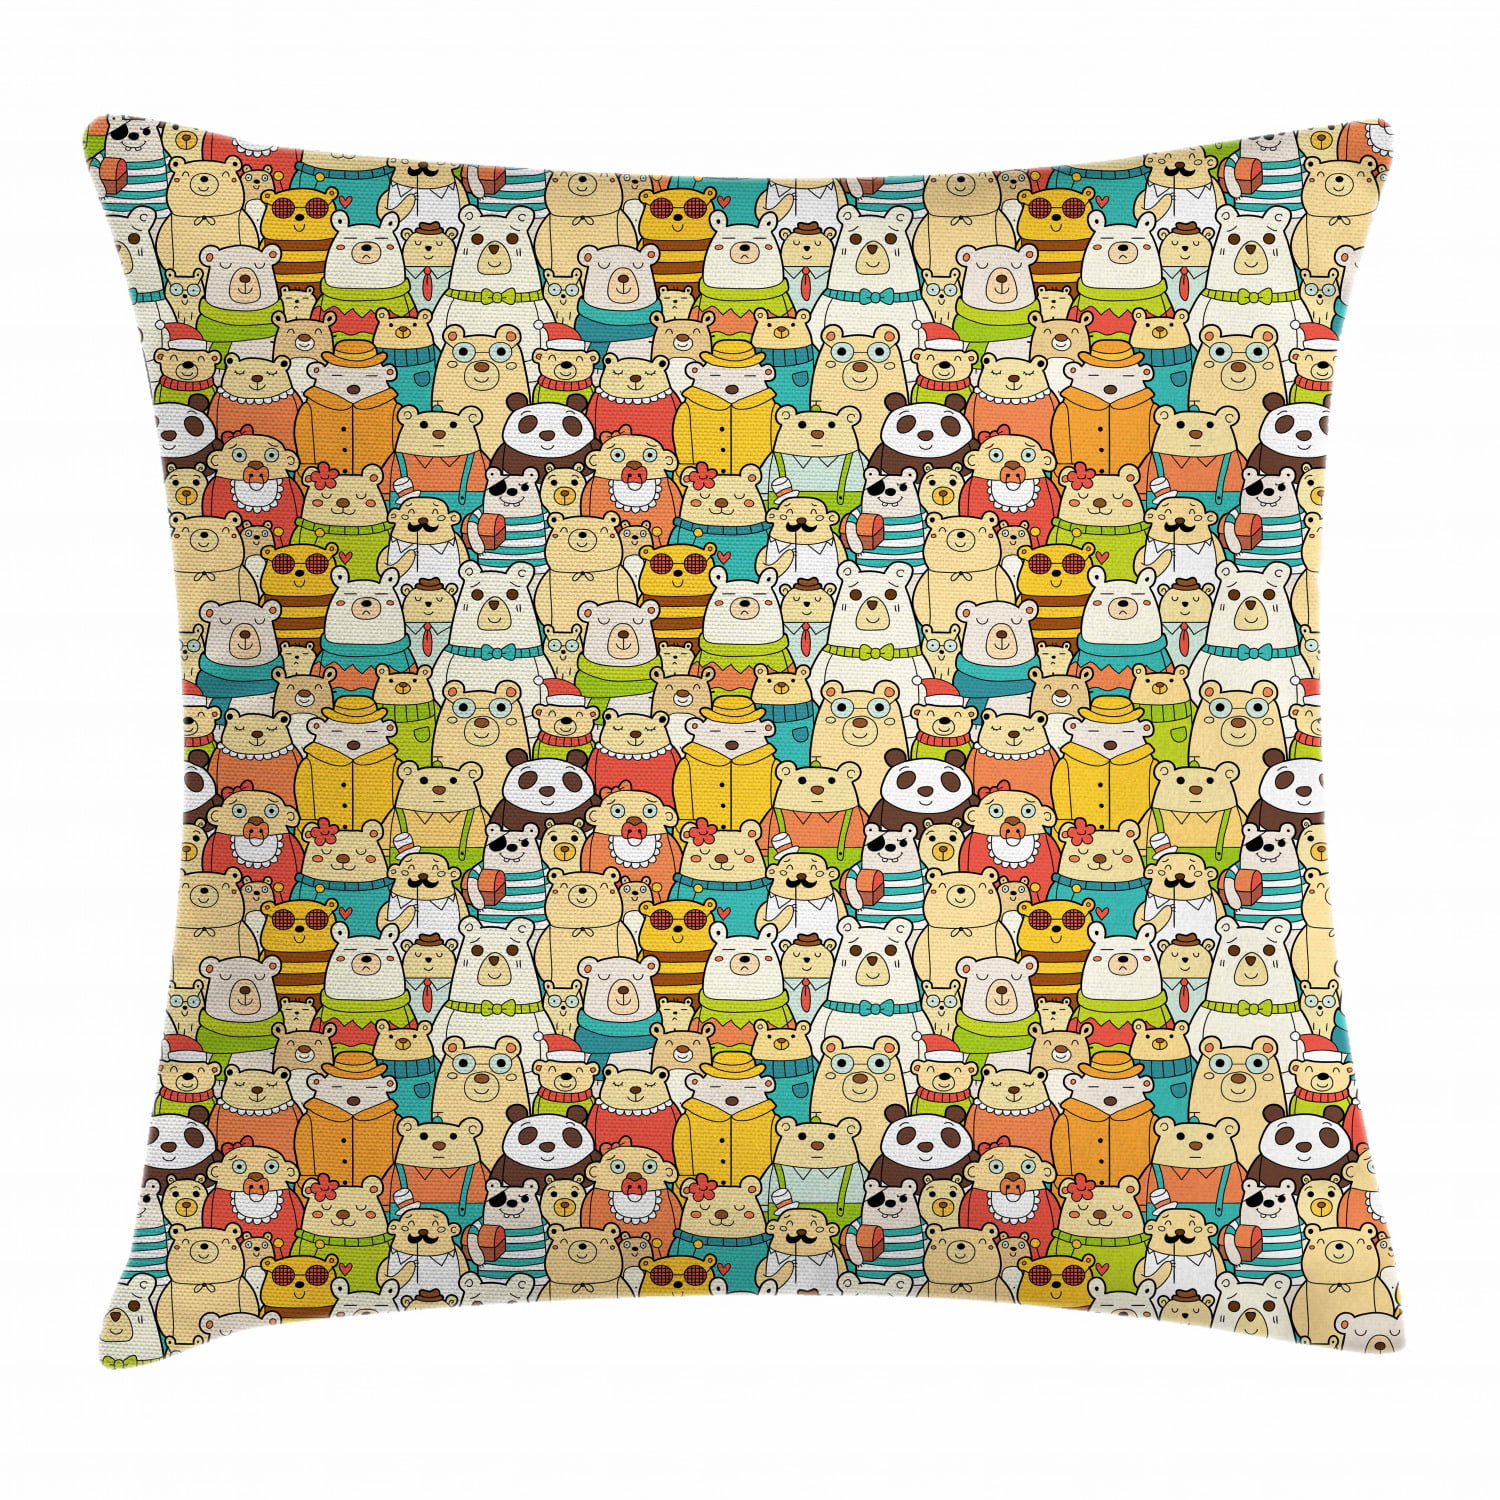 Cute Polar Bear Pattern Throw Pillow 18x18 Multicolor Polar Bear Gifts by D